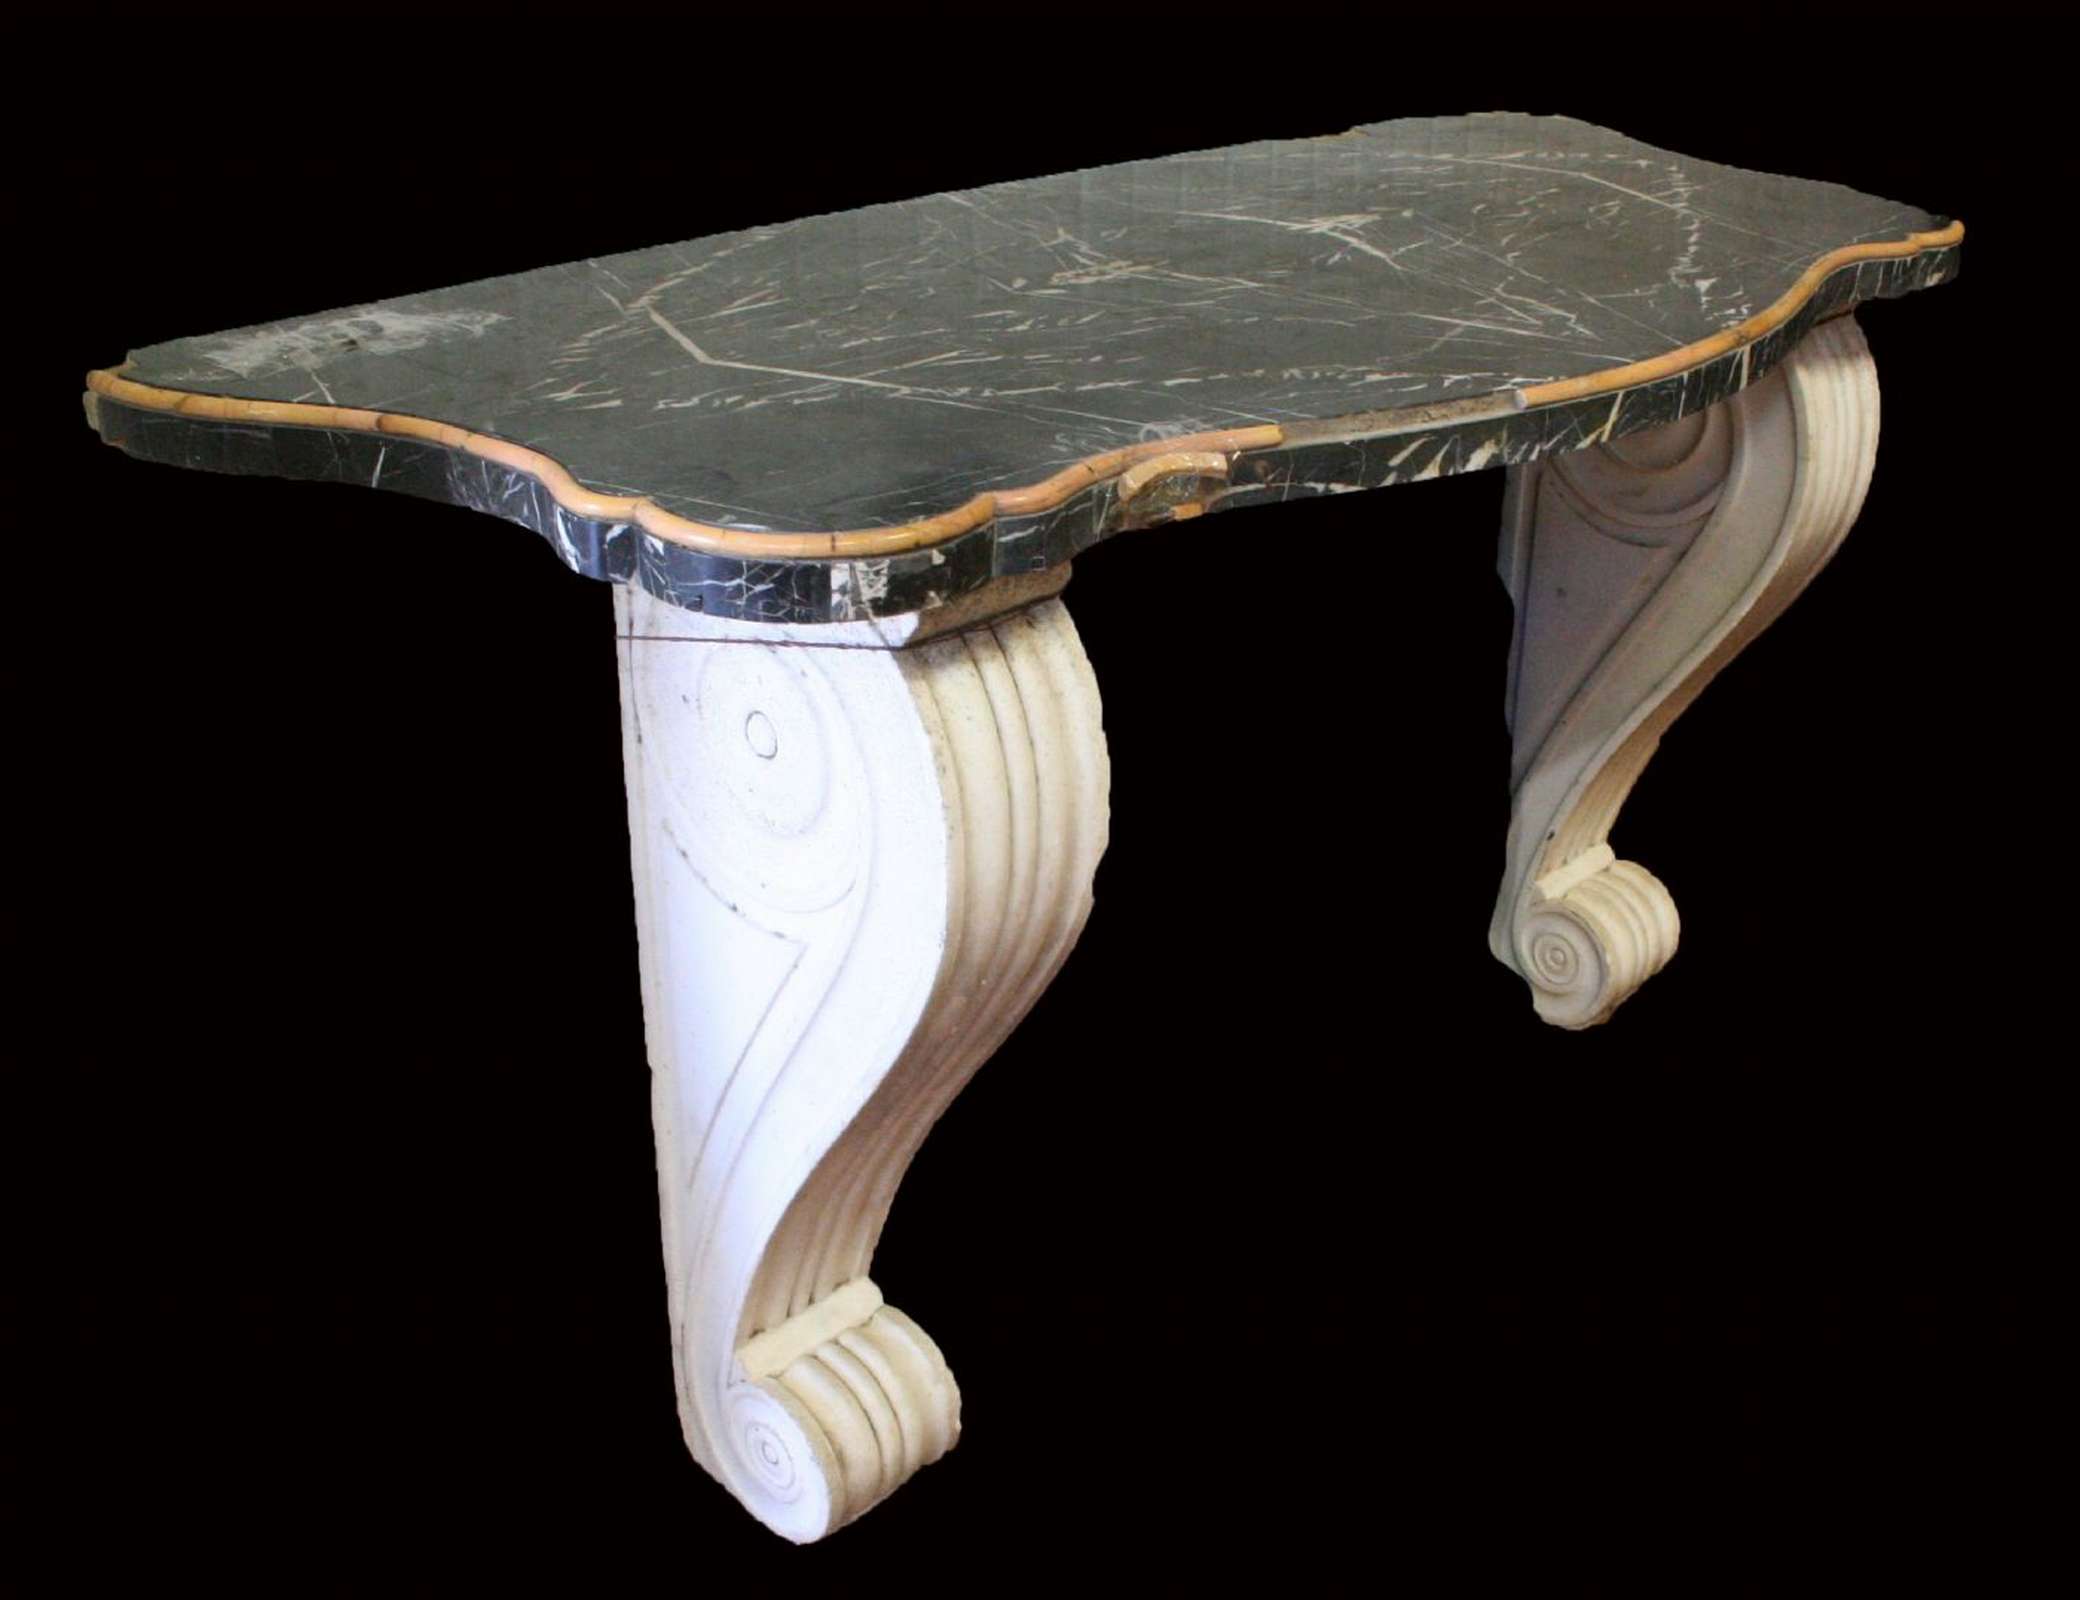 Consolle lastronato in marmo. Epoca 1800 - Tavoli in vari materiali - Tavoli e complementi - Prodotti - Antichità Fiorillo